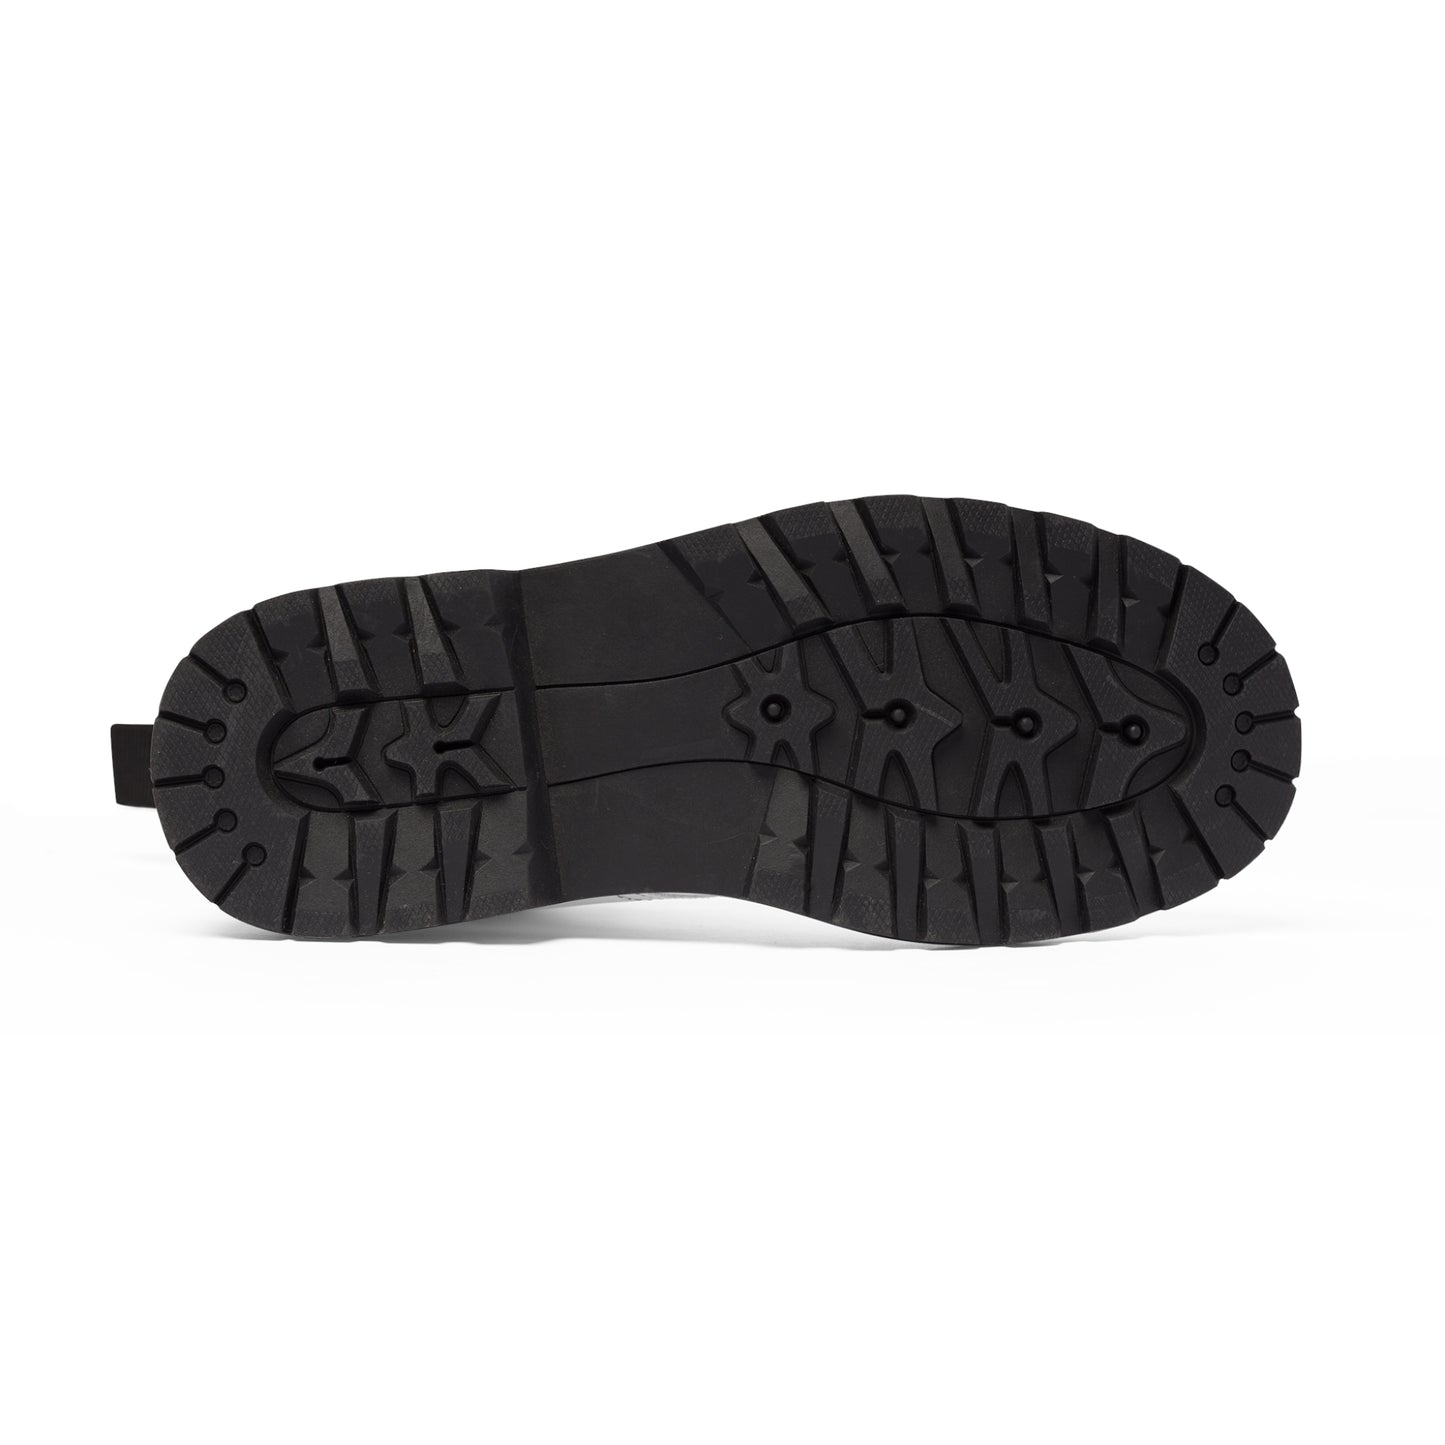 Men's Canvas Boots - 02877 US 10.5 Black sole